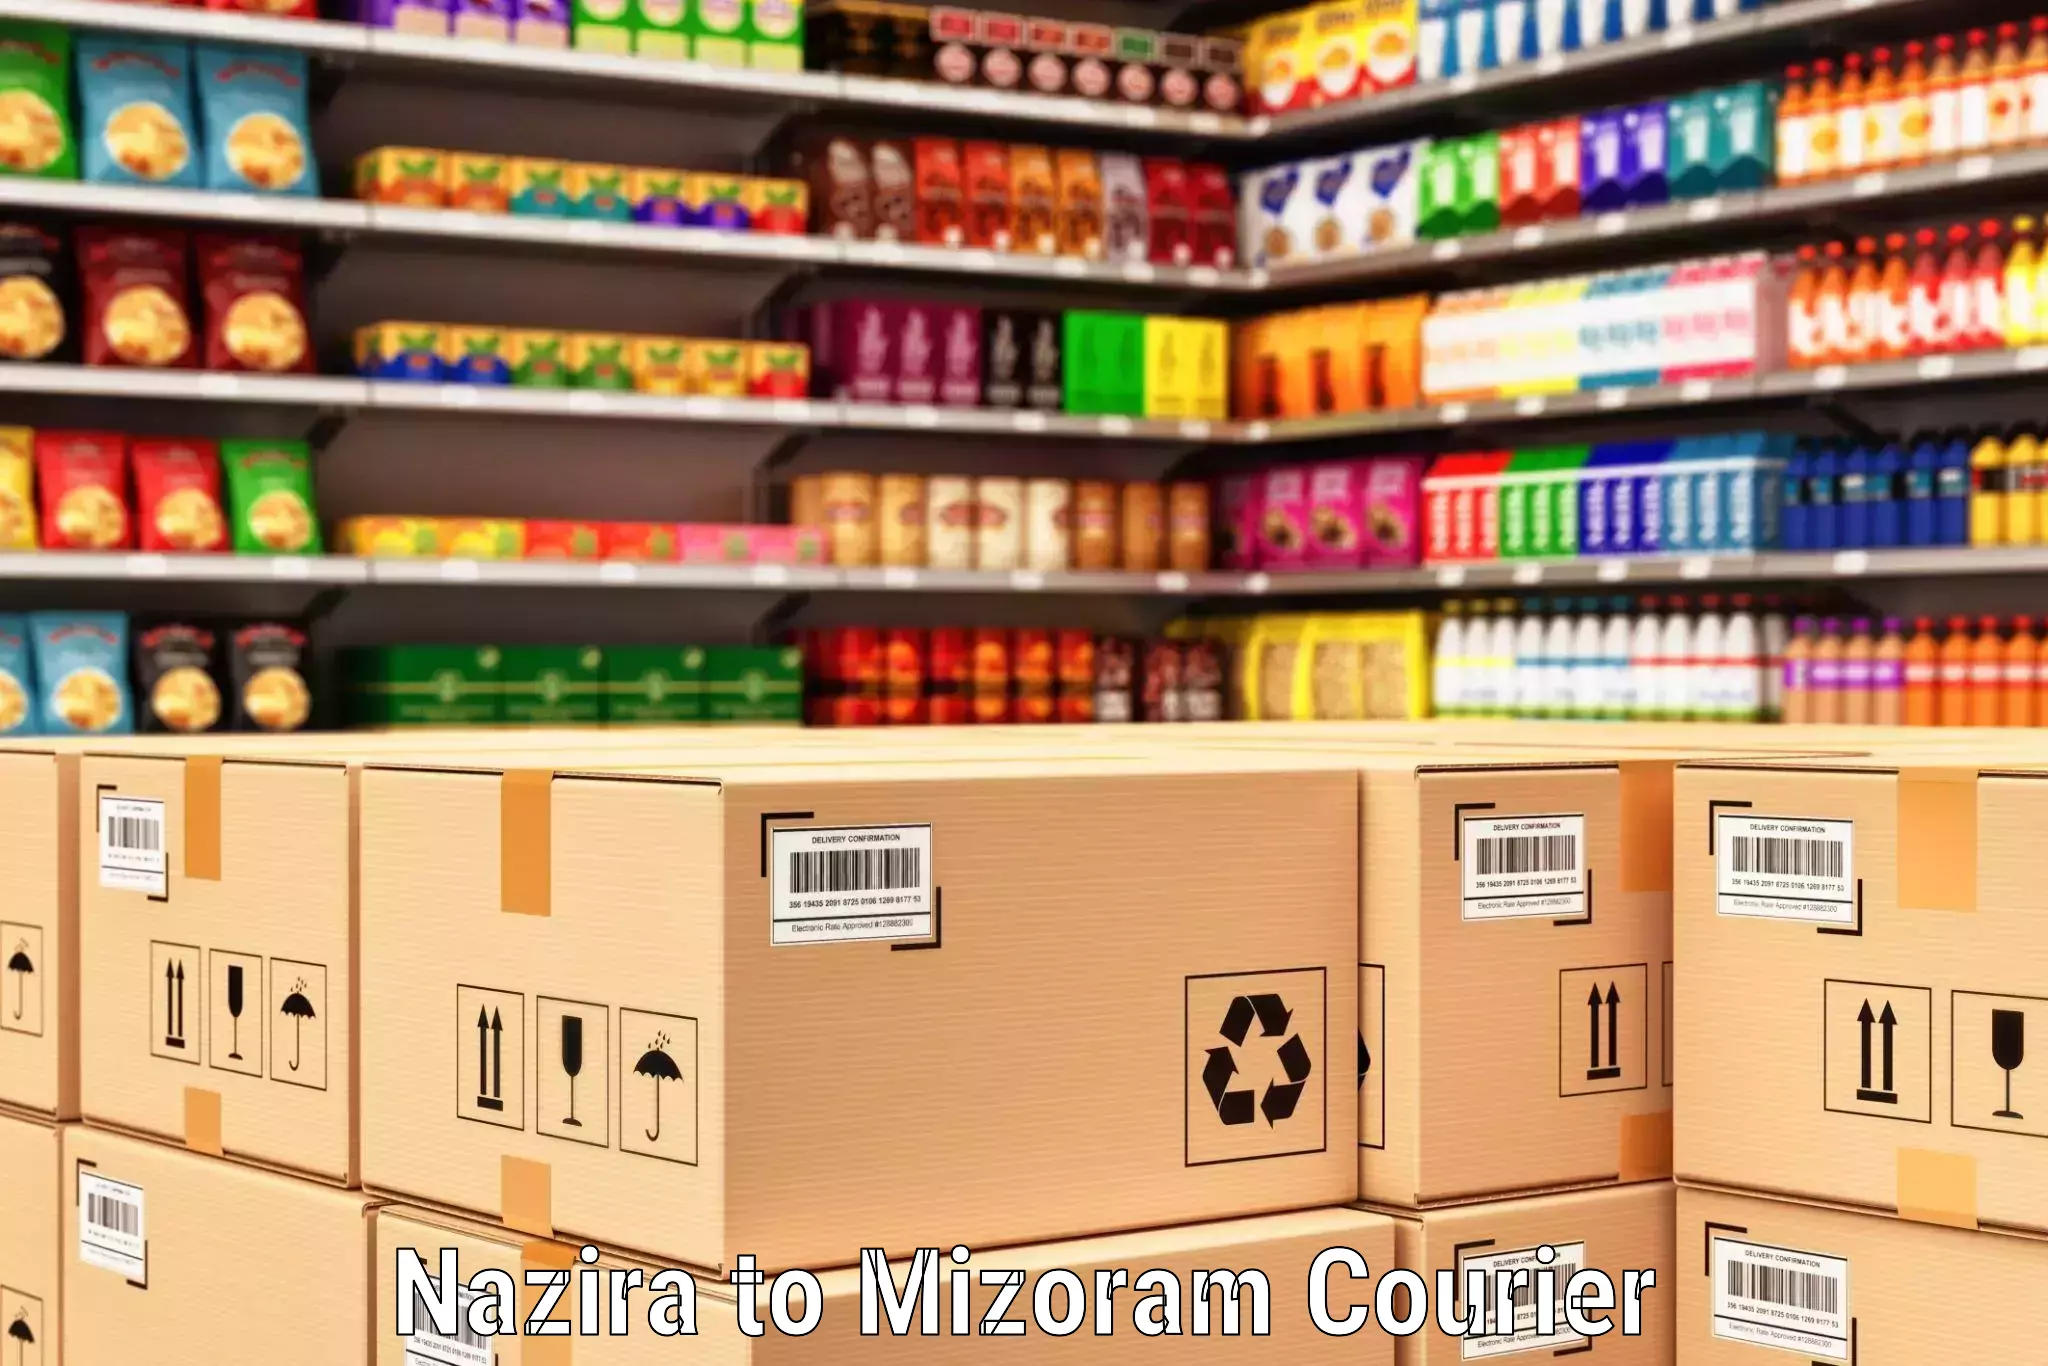 Supply chain efficiency in Nazira to Mizoram